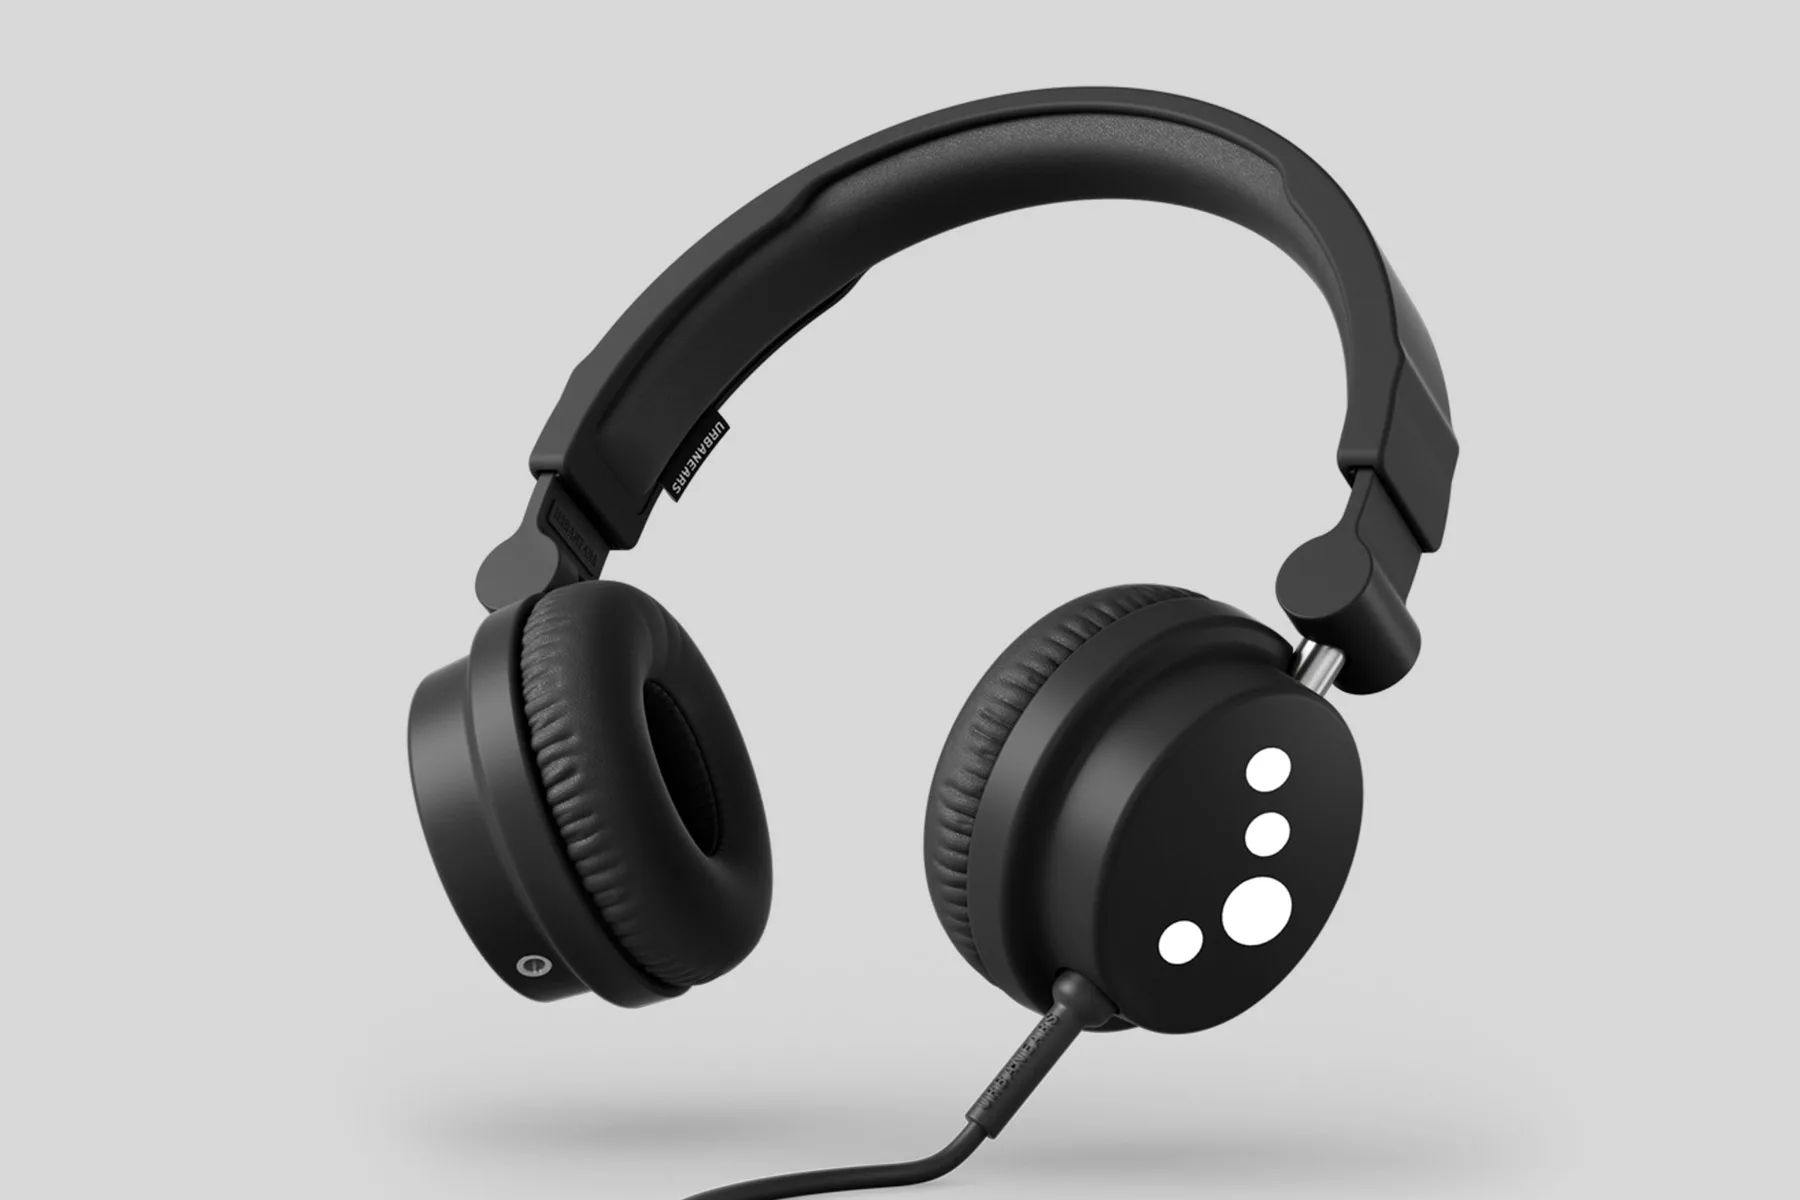 Cocoon and Urbanears launch eco-friendly Zinken headphones